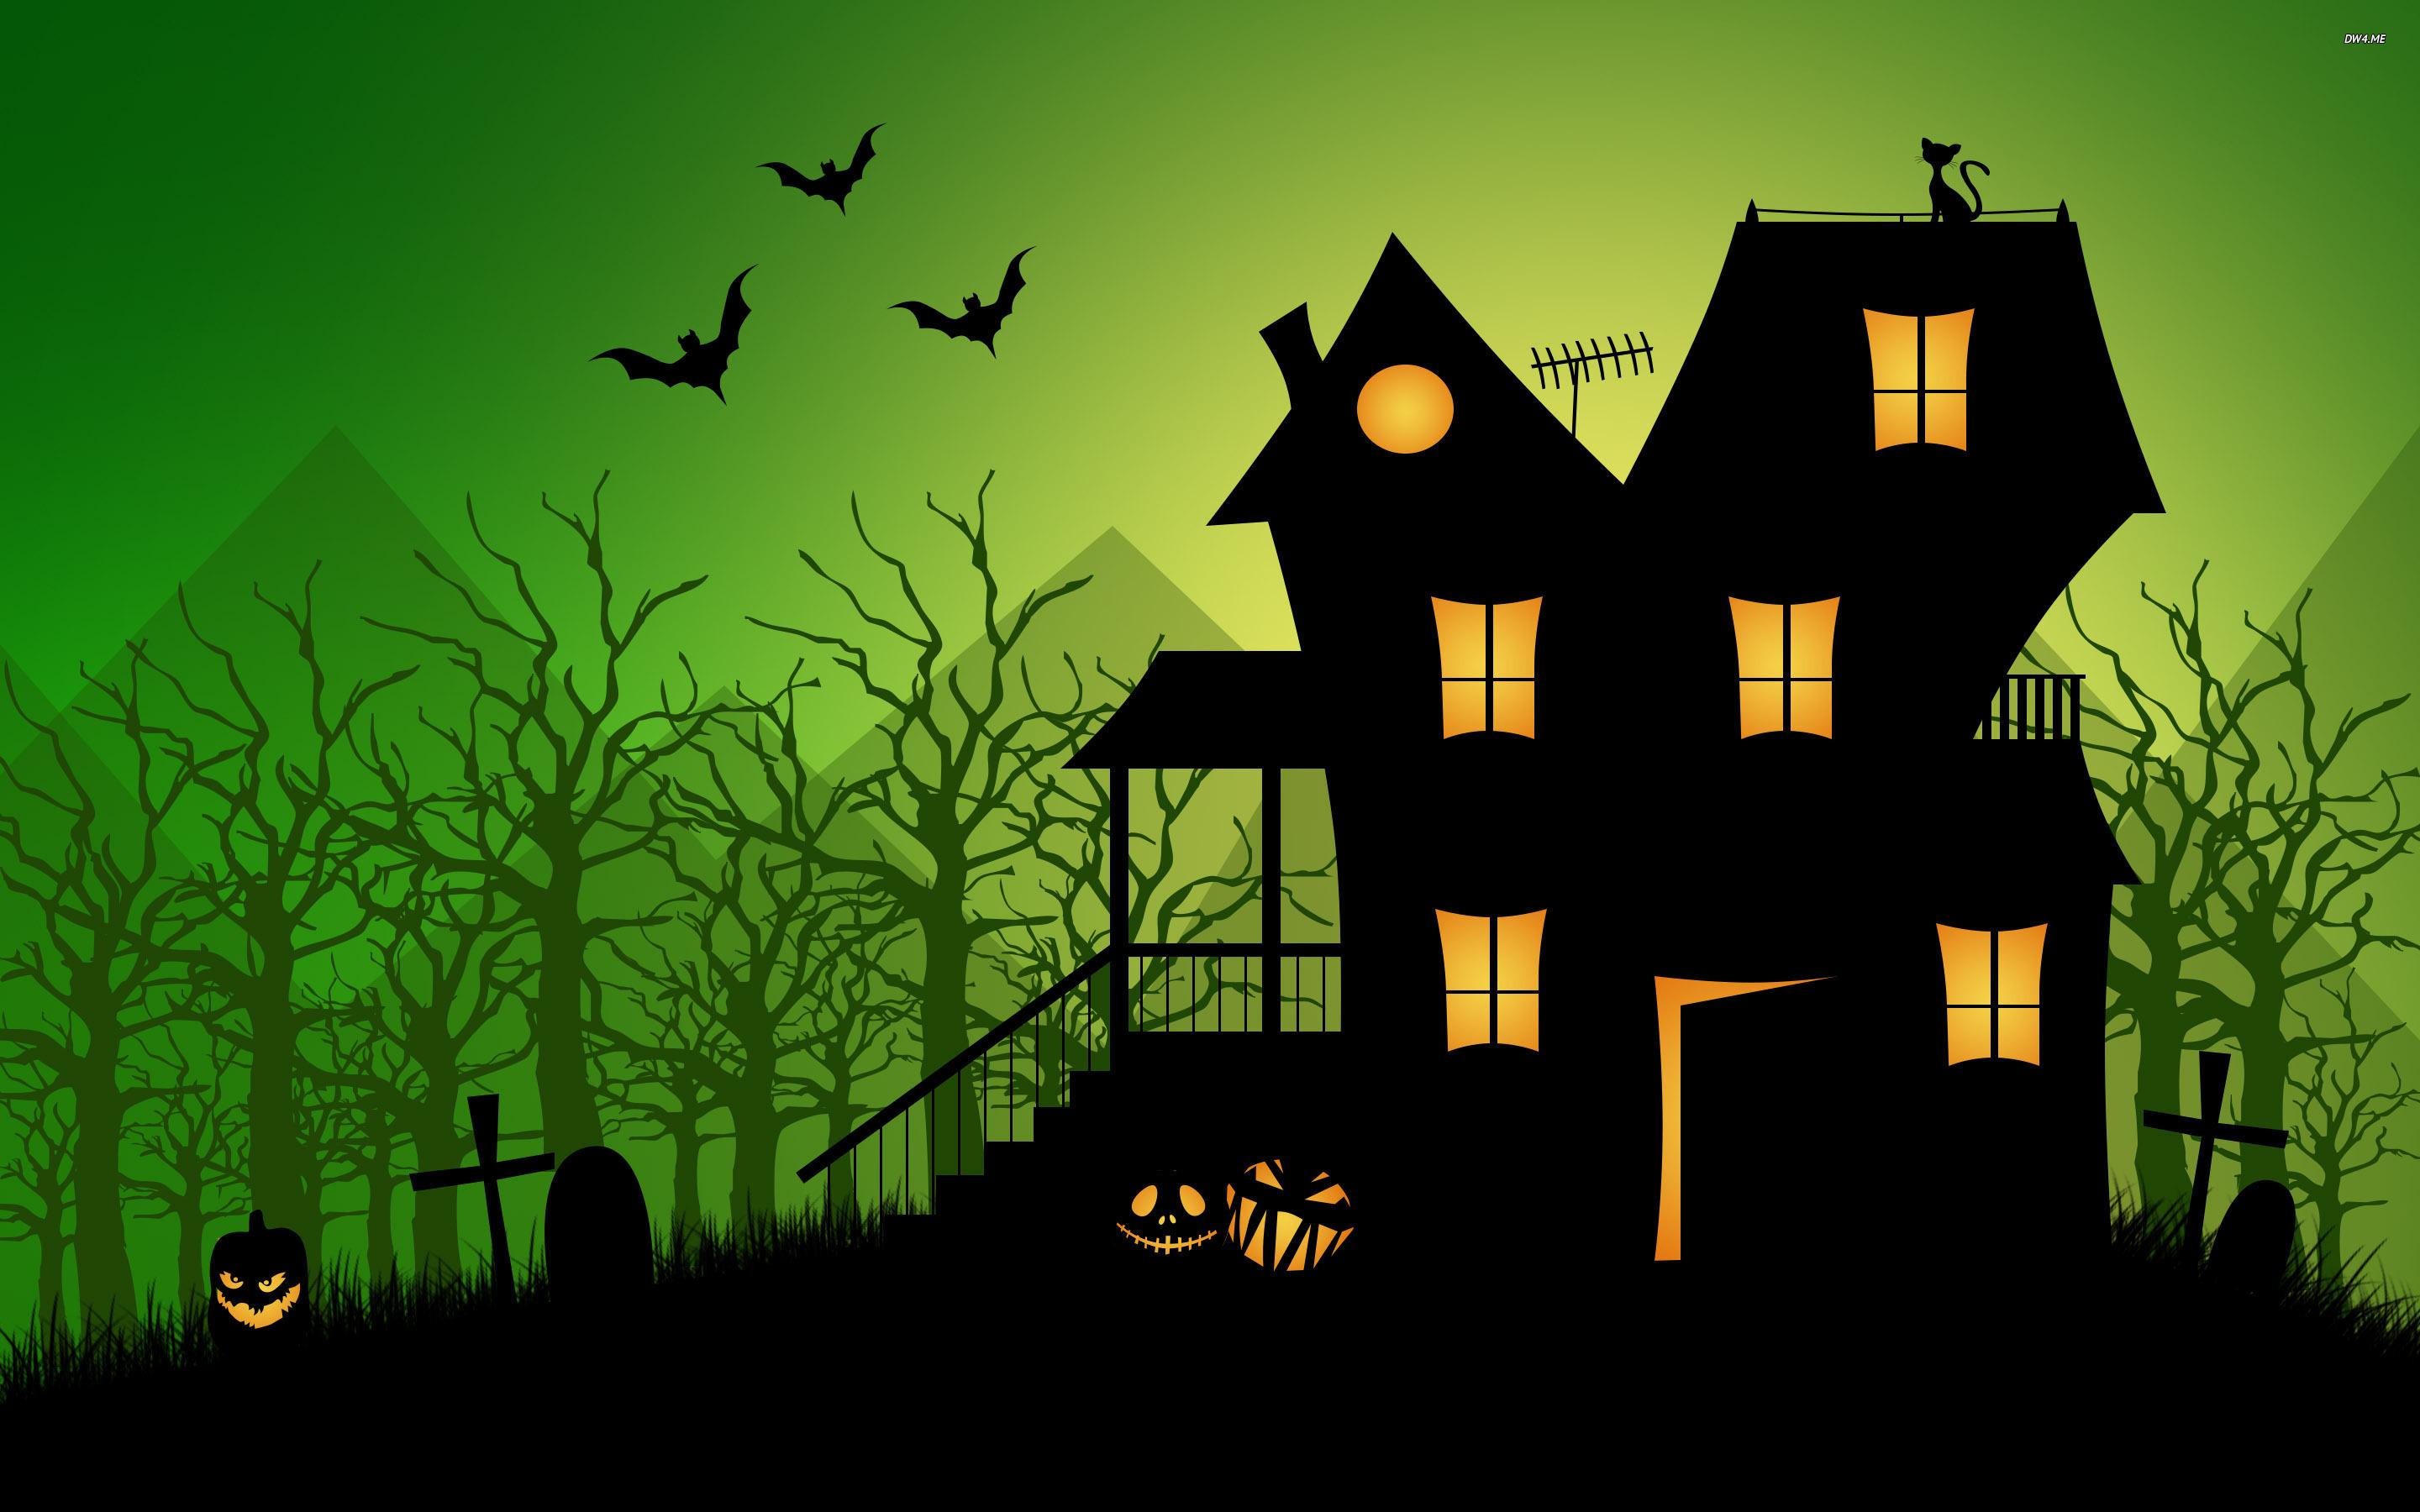 Haunted House Halloween Image.